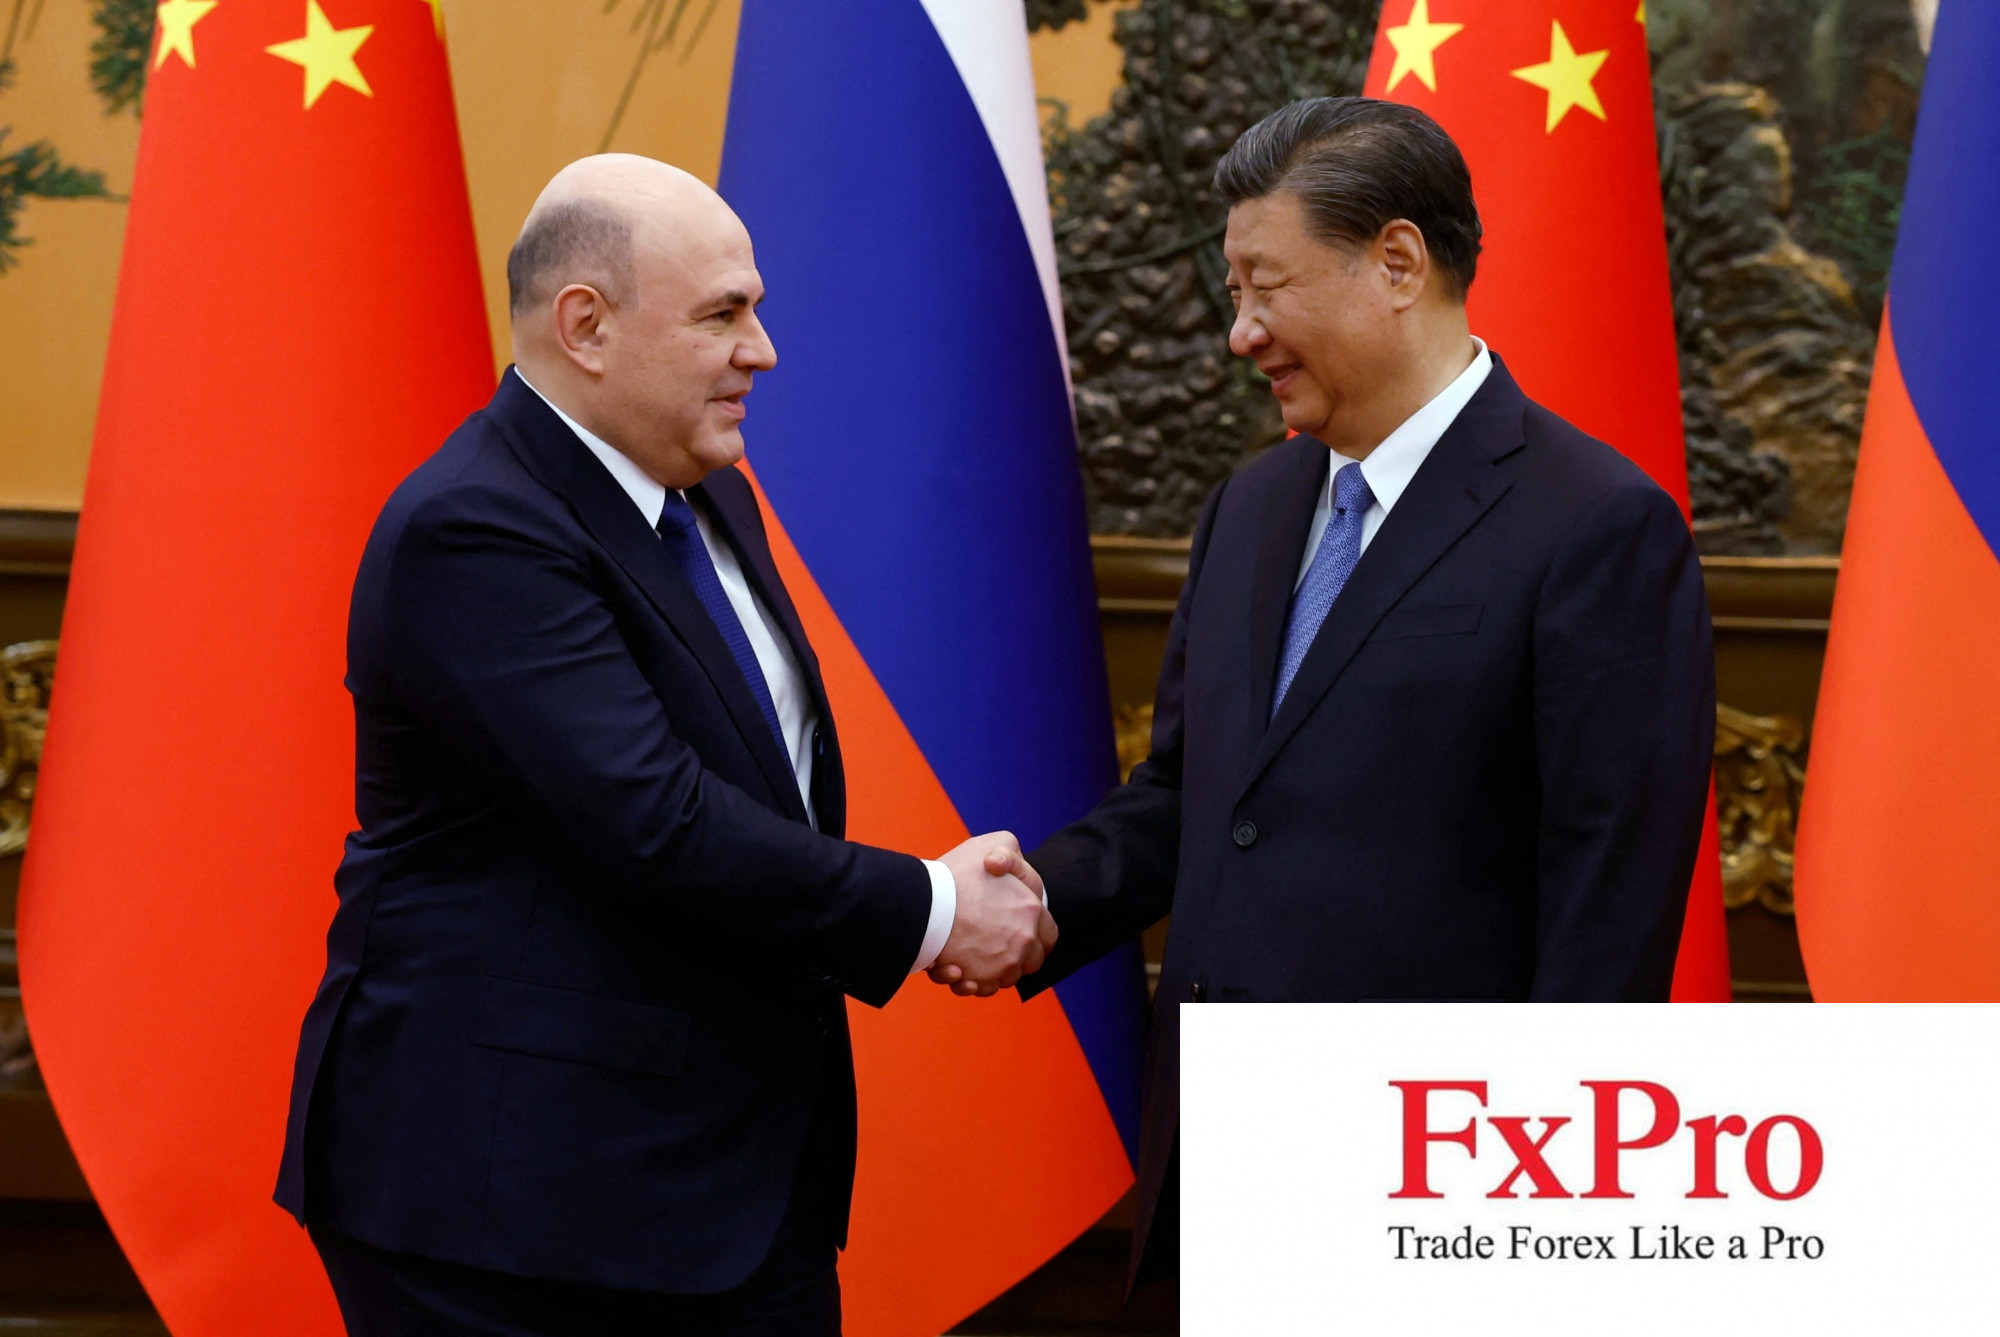 Quan hệ Nga - Trung ngày càng khởi sắc bất chấp phản đối từ các nước phương Tây